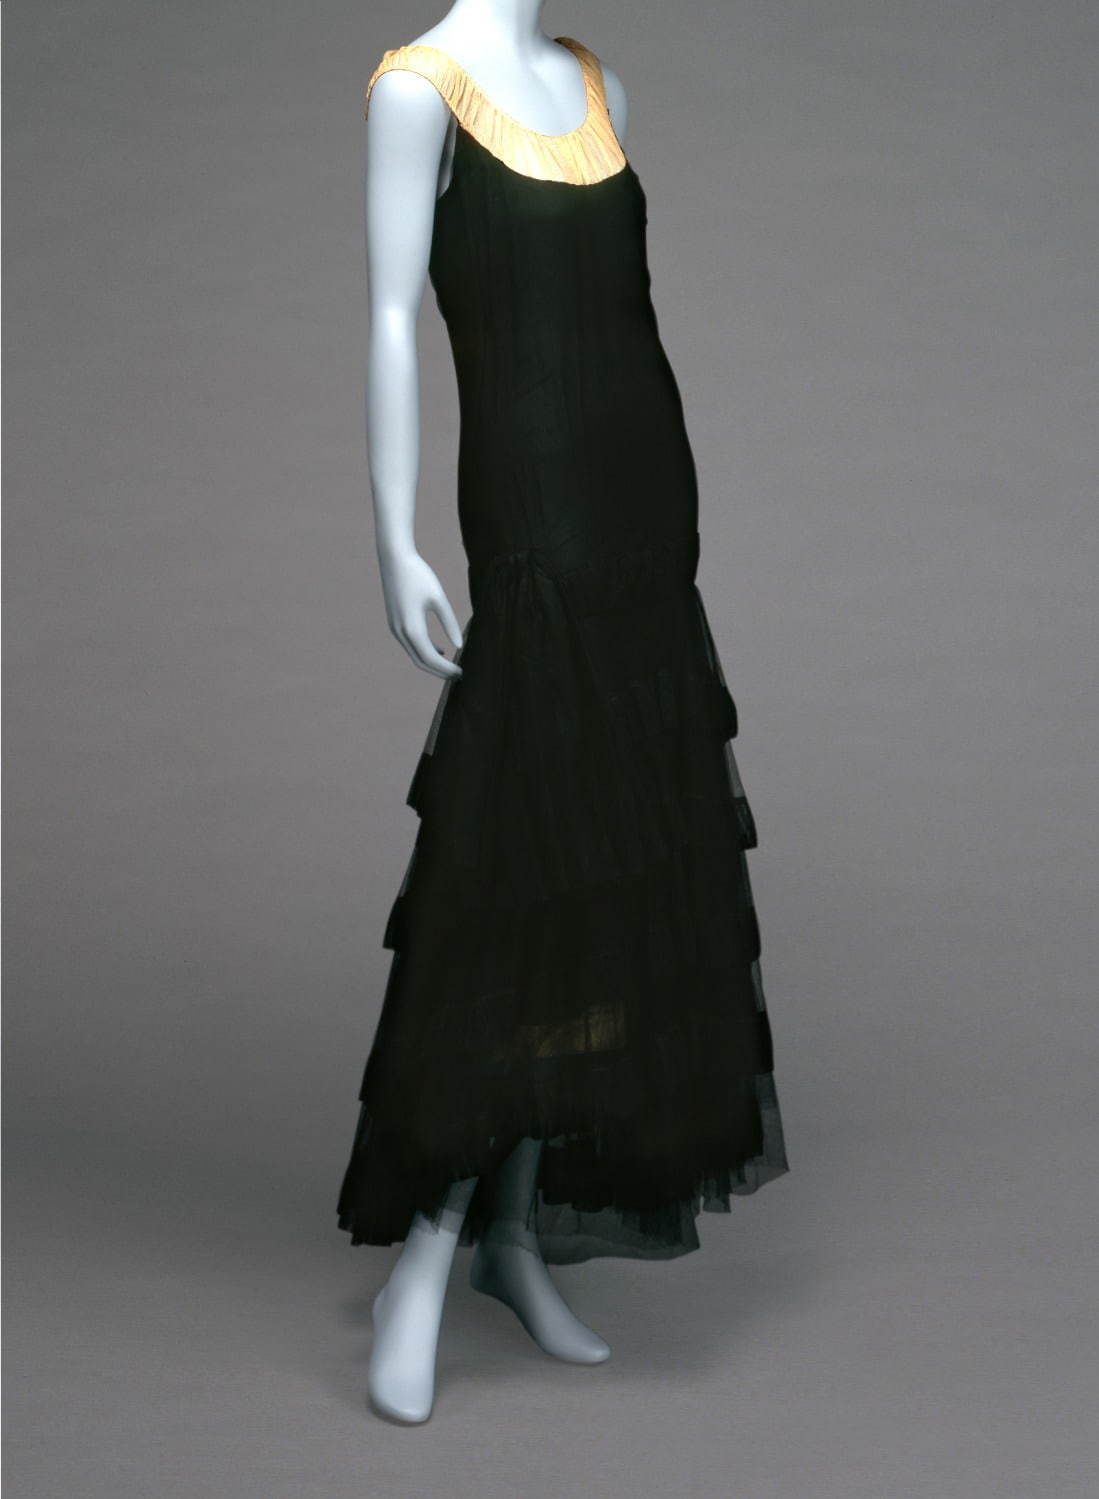 イヴニング・ドレス、 ガブリエル・シャネル 1929年